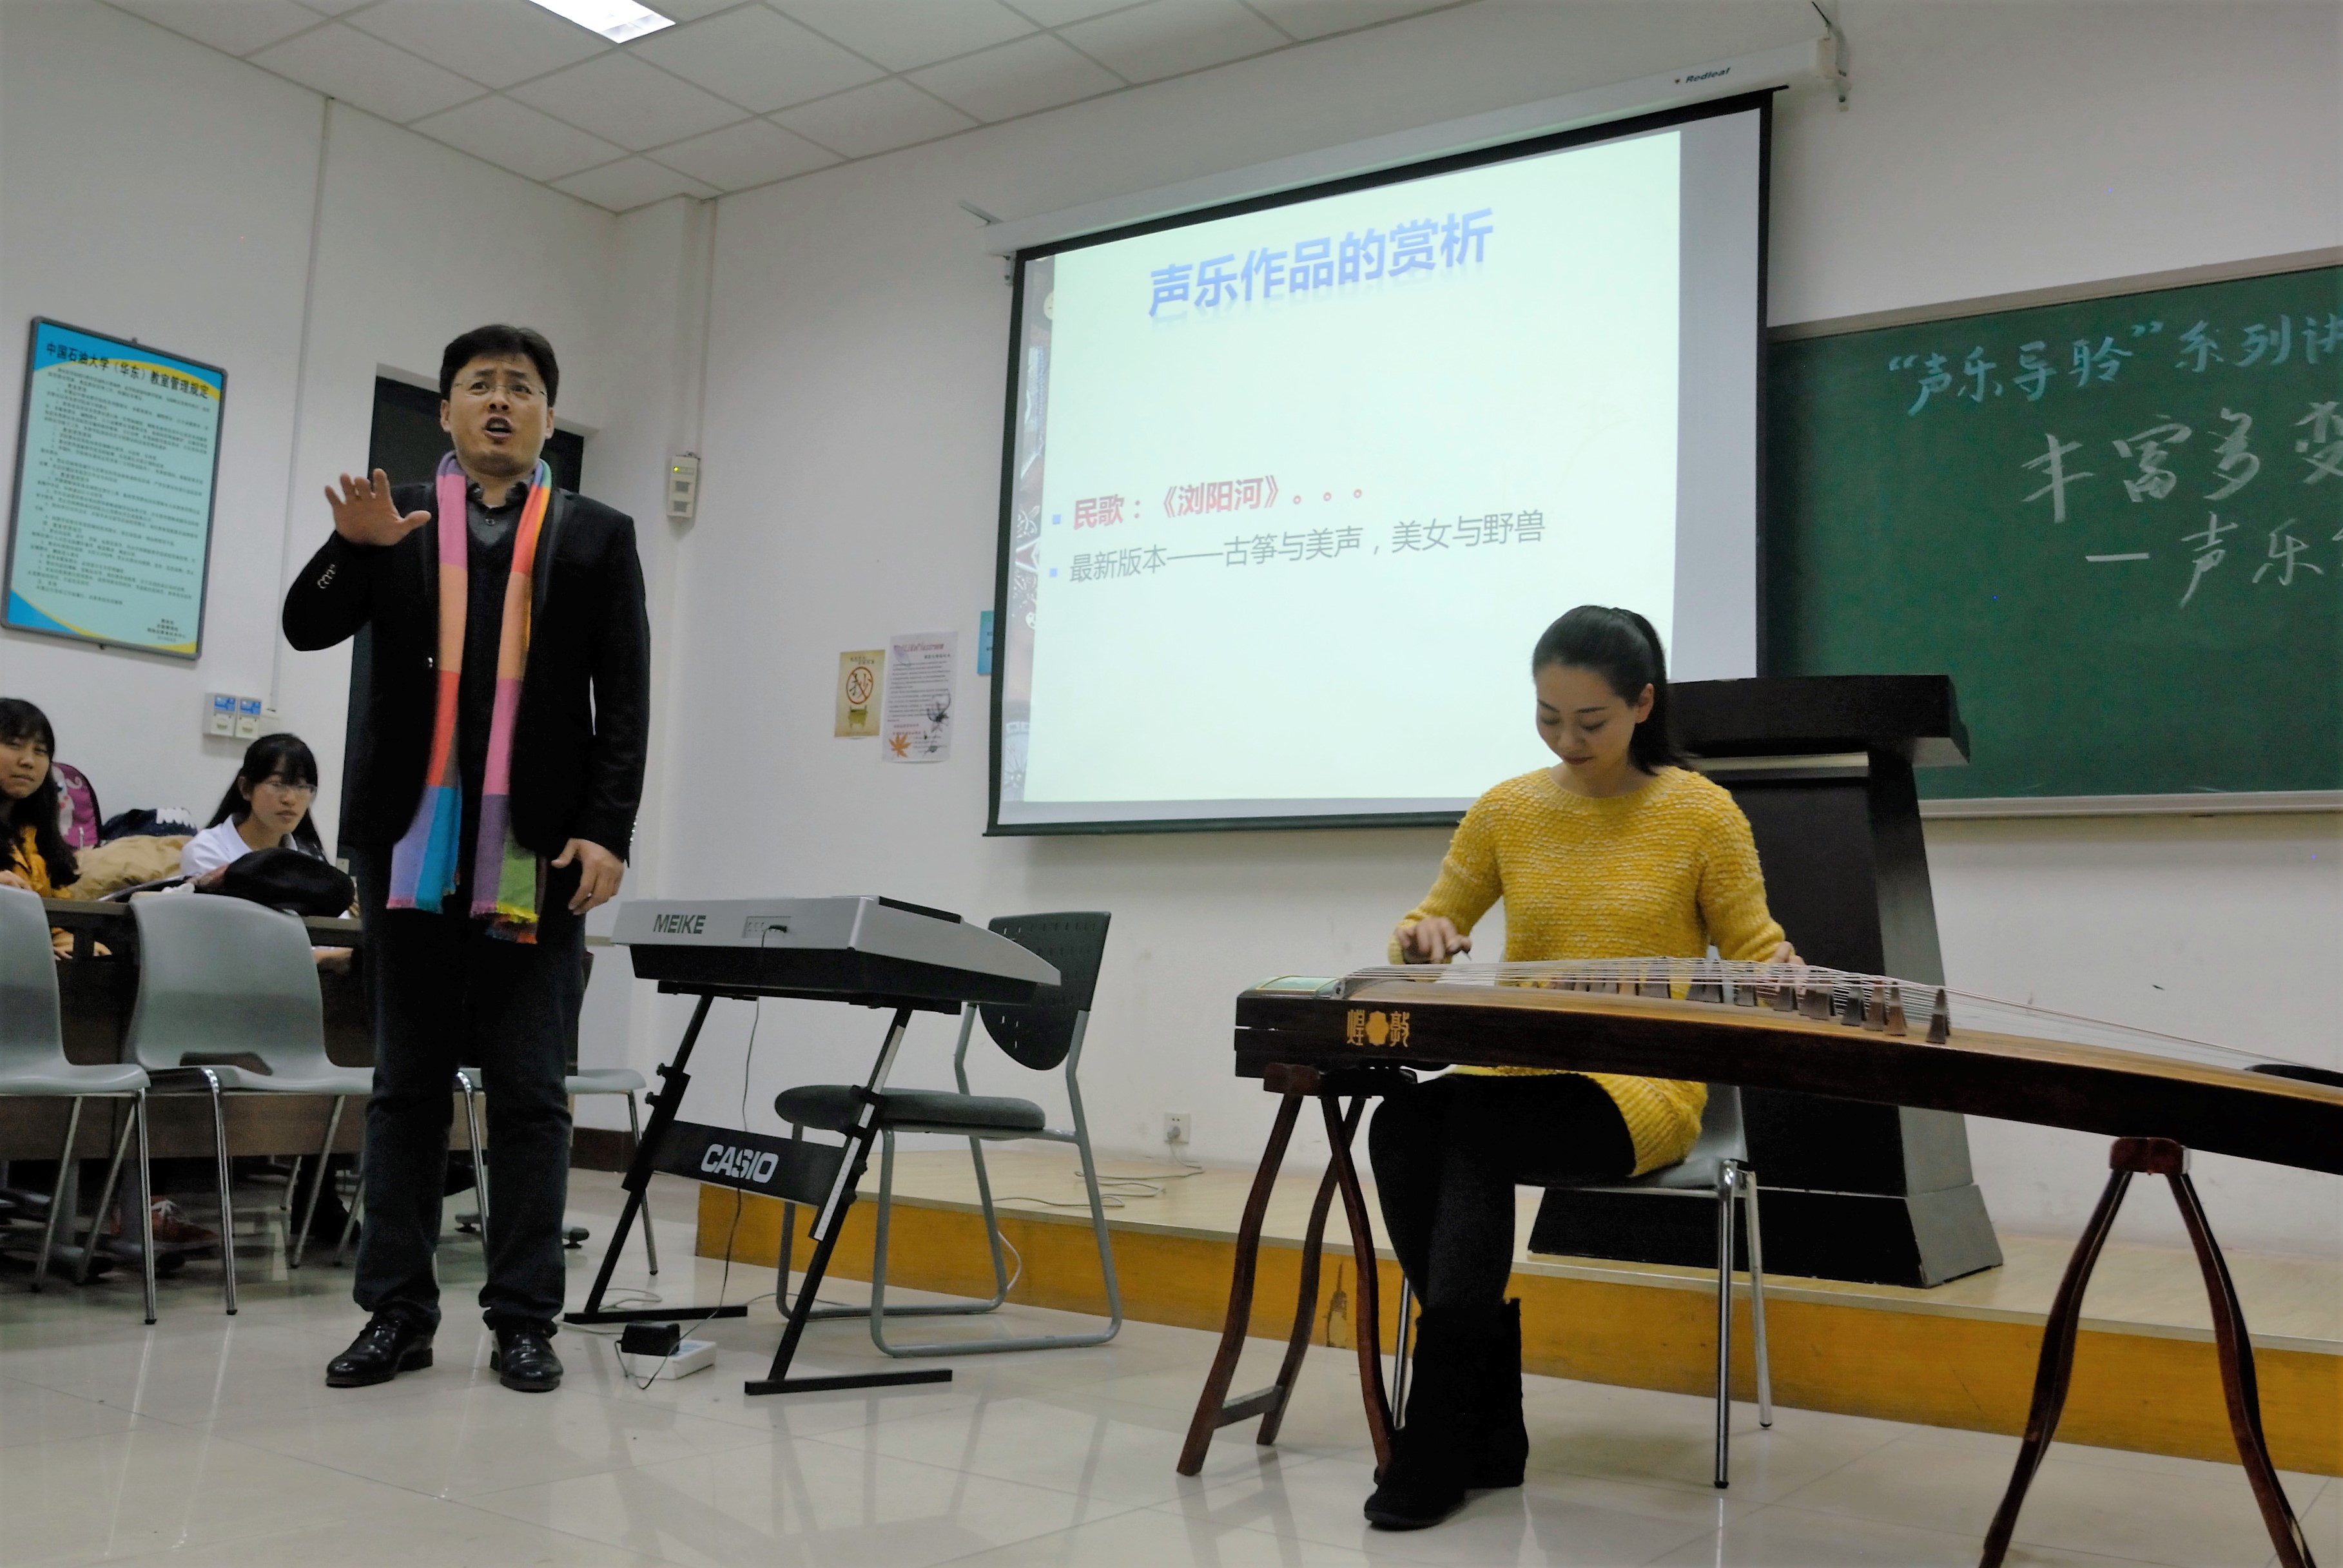 本次讲座以"声乐导聆"为主题,邀请到我校音乐系著名声乐老师尹国峰为